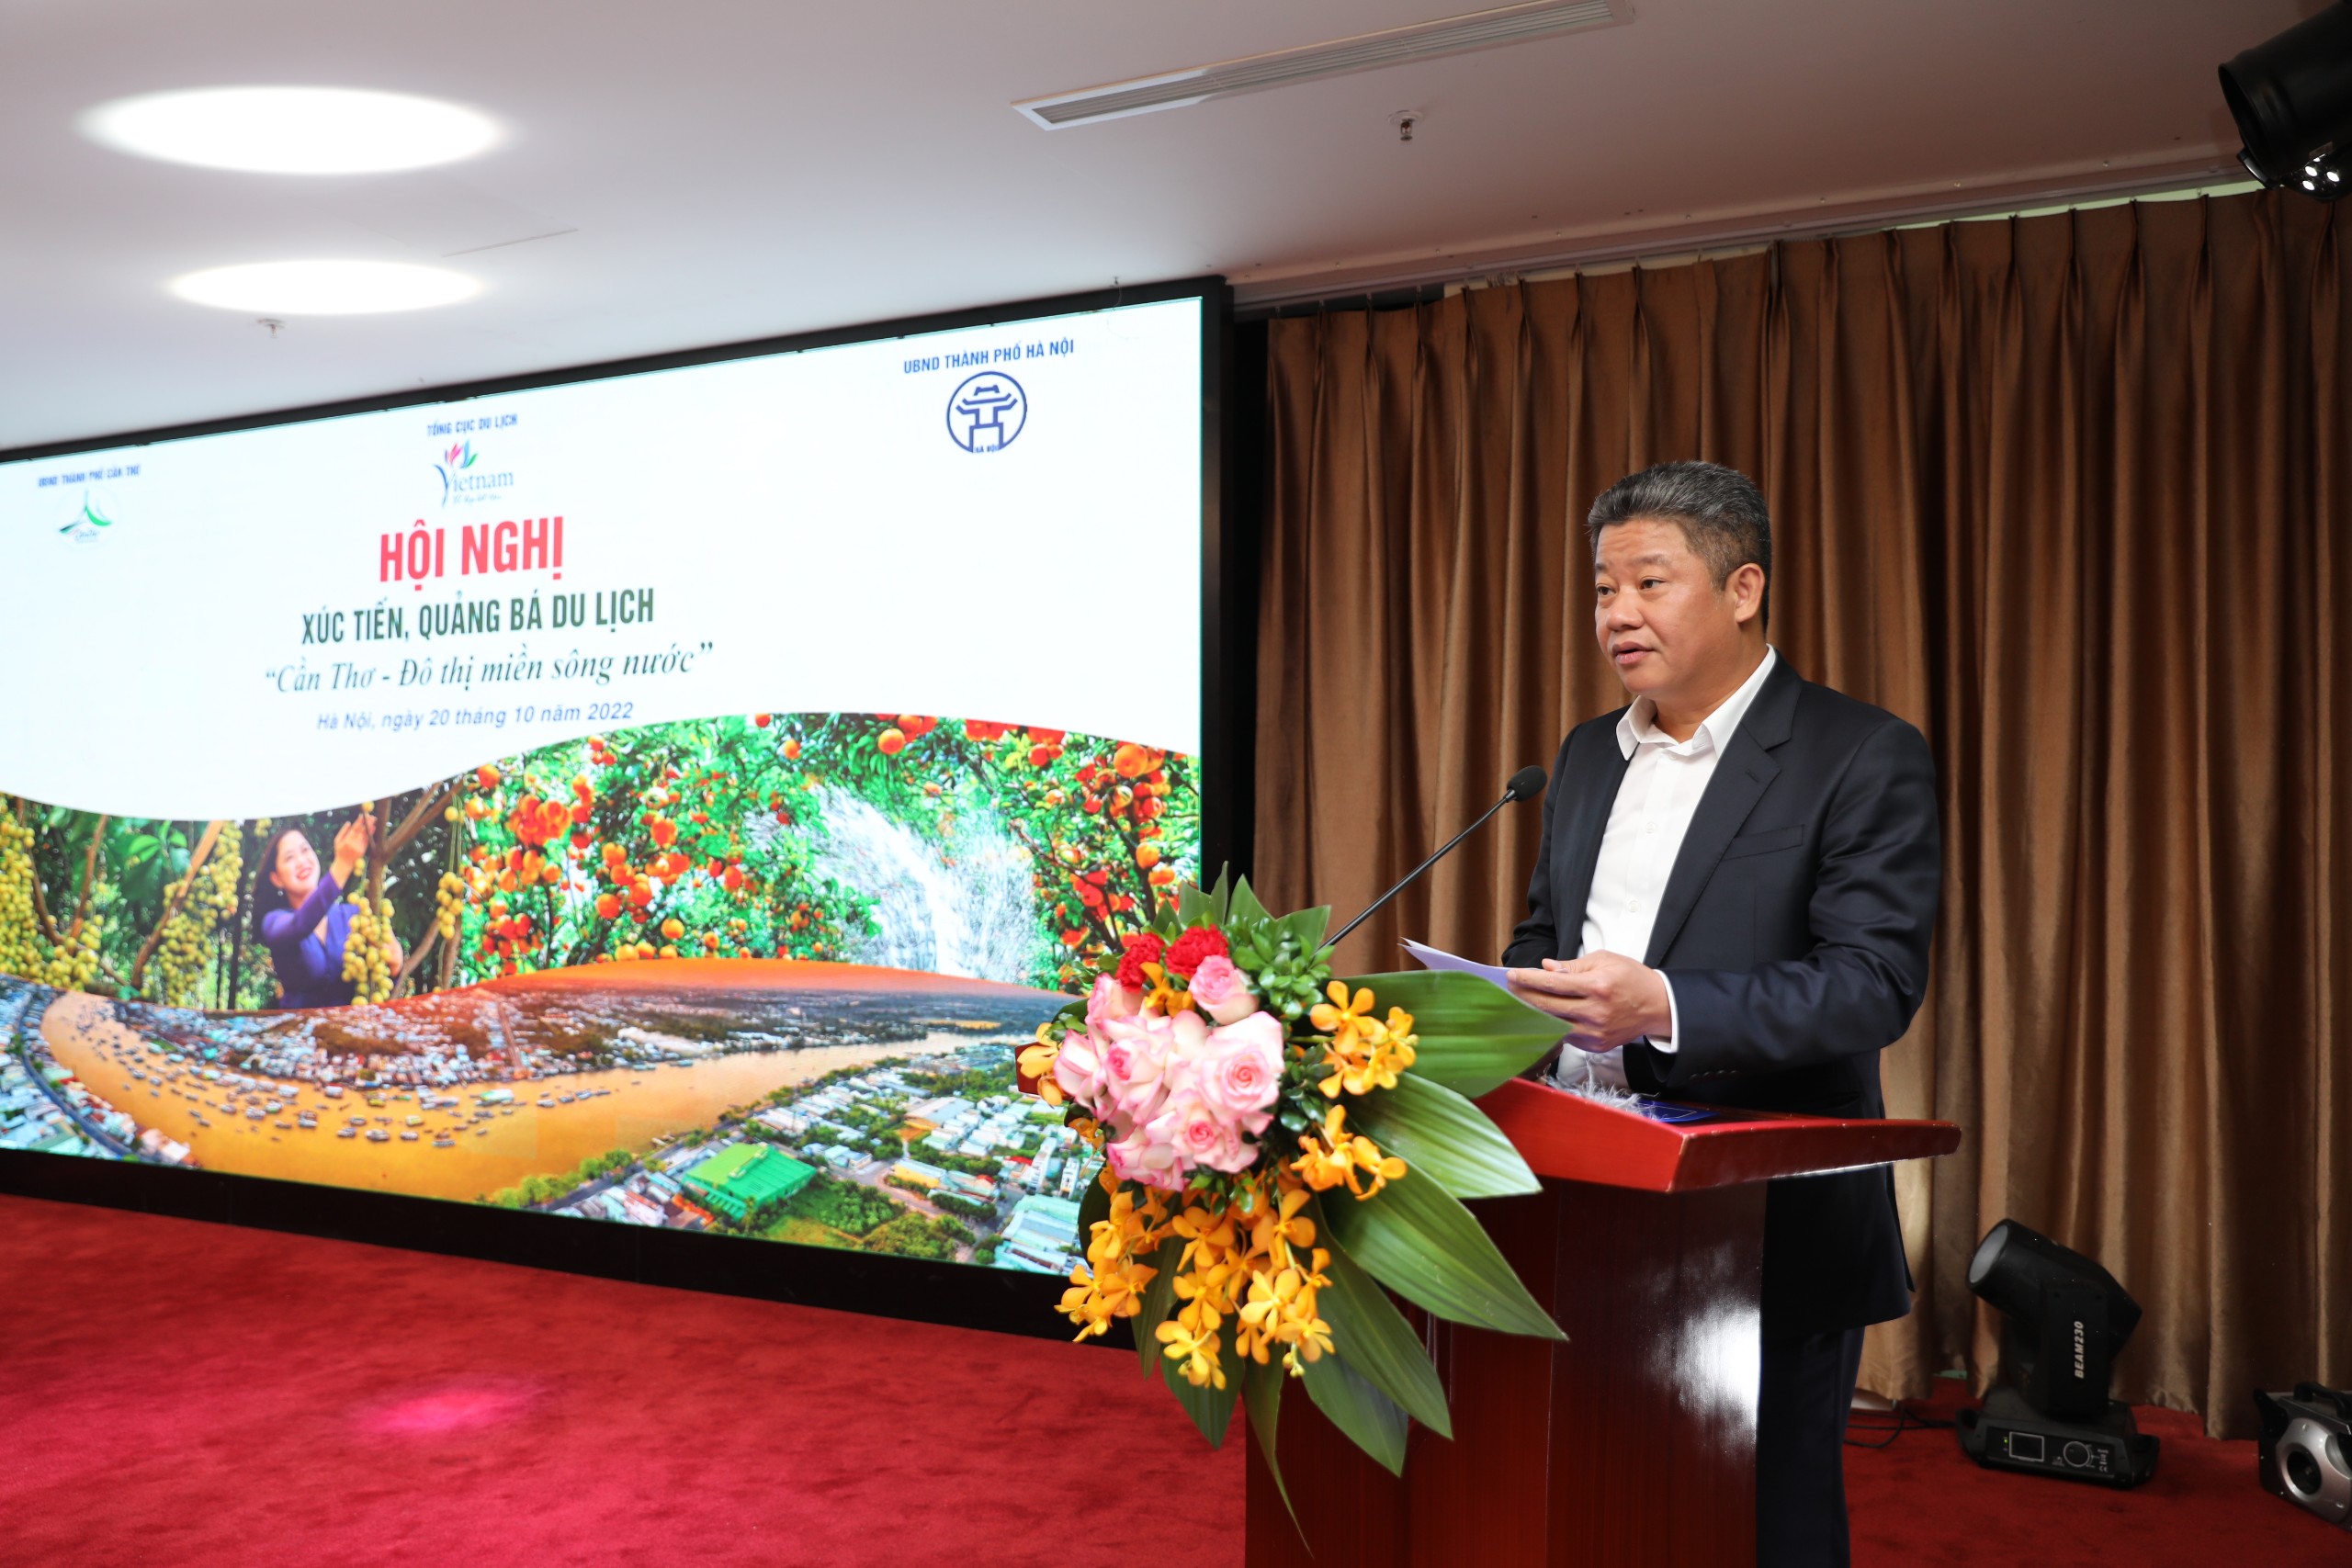 Phó Chủ tịch UBND Thành phố Hà Nội Nguyễn Mạnh Quyền phát biểu chào mừng hội nghị